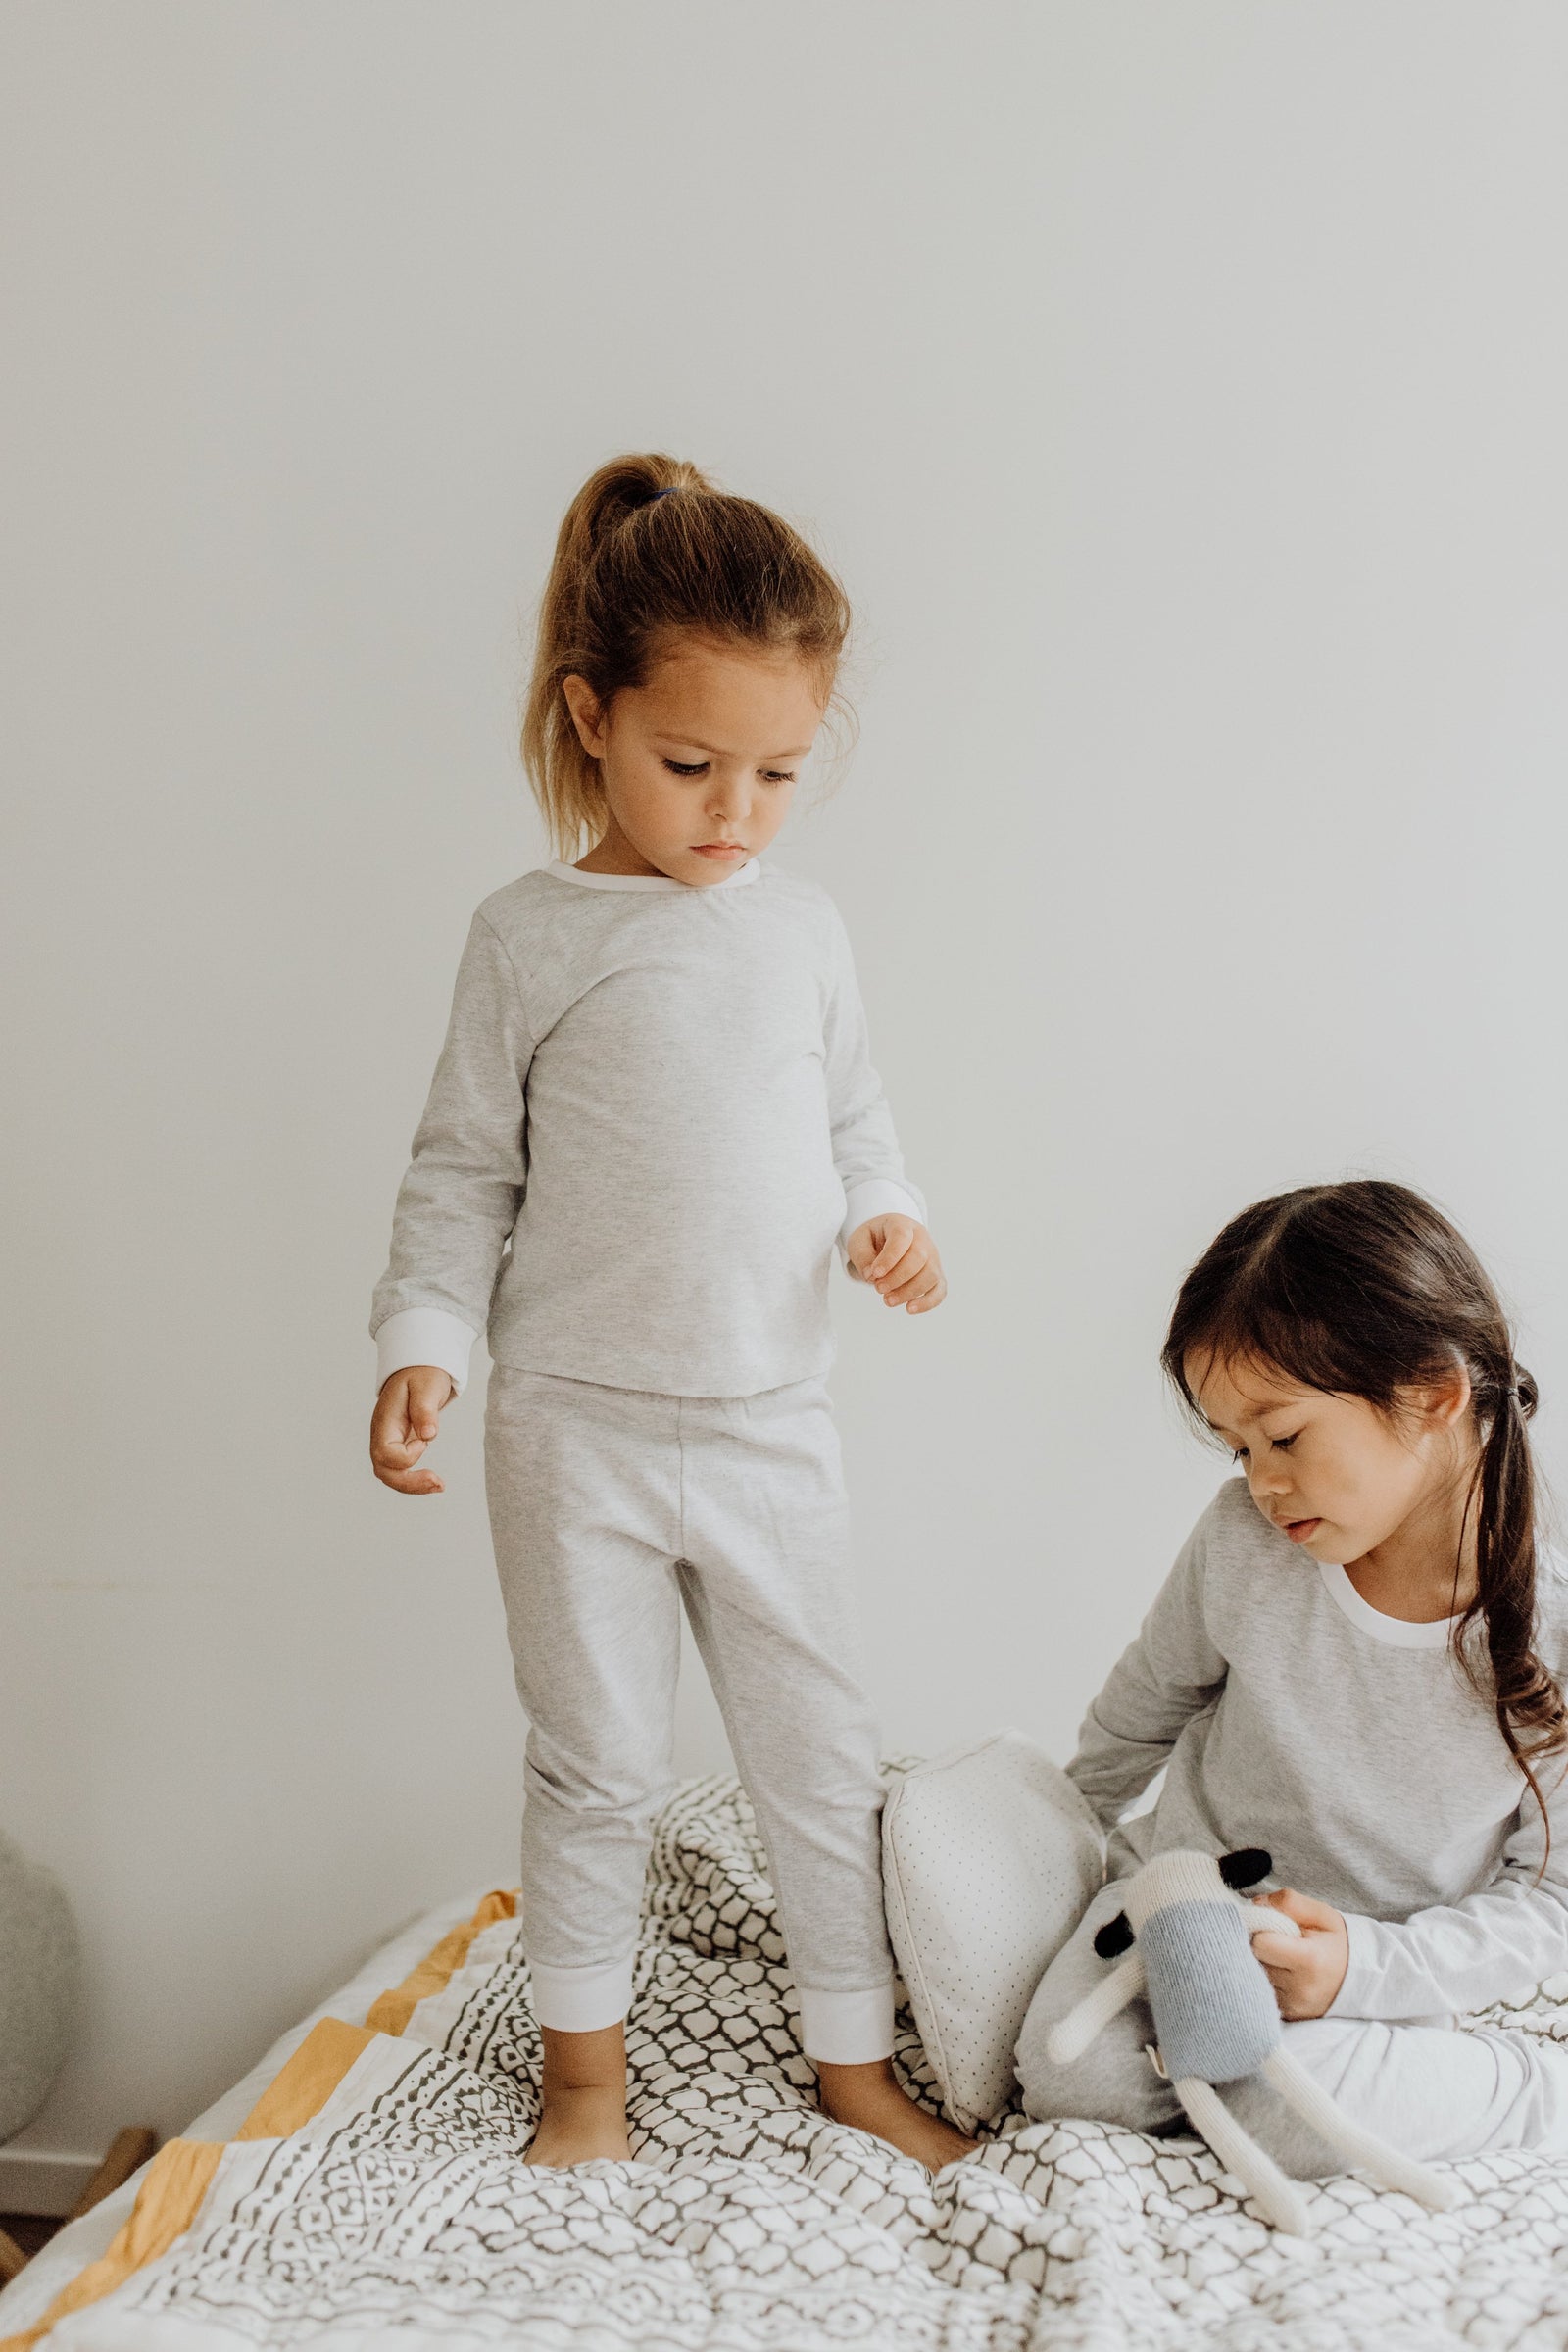 Erawan Grey Cotton Knit Pj Set for Toddler & Big Kid